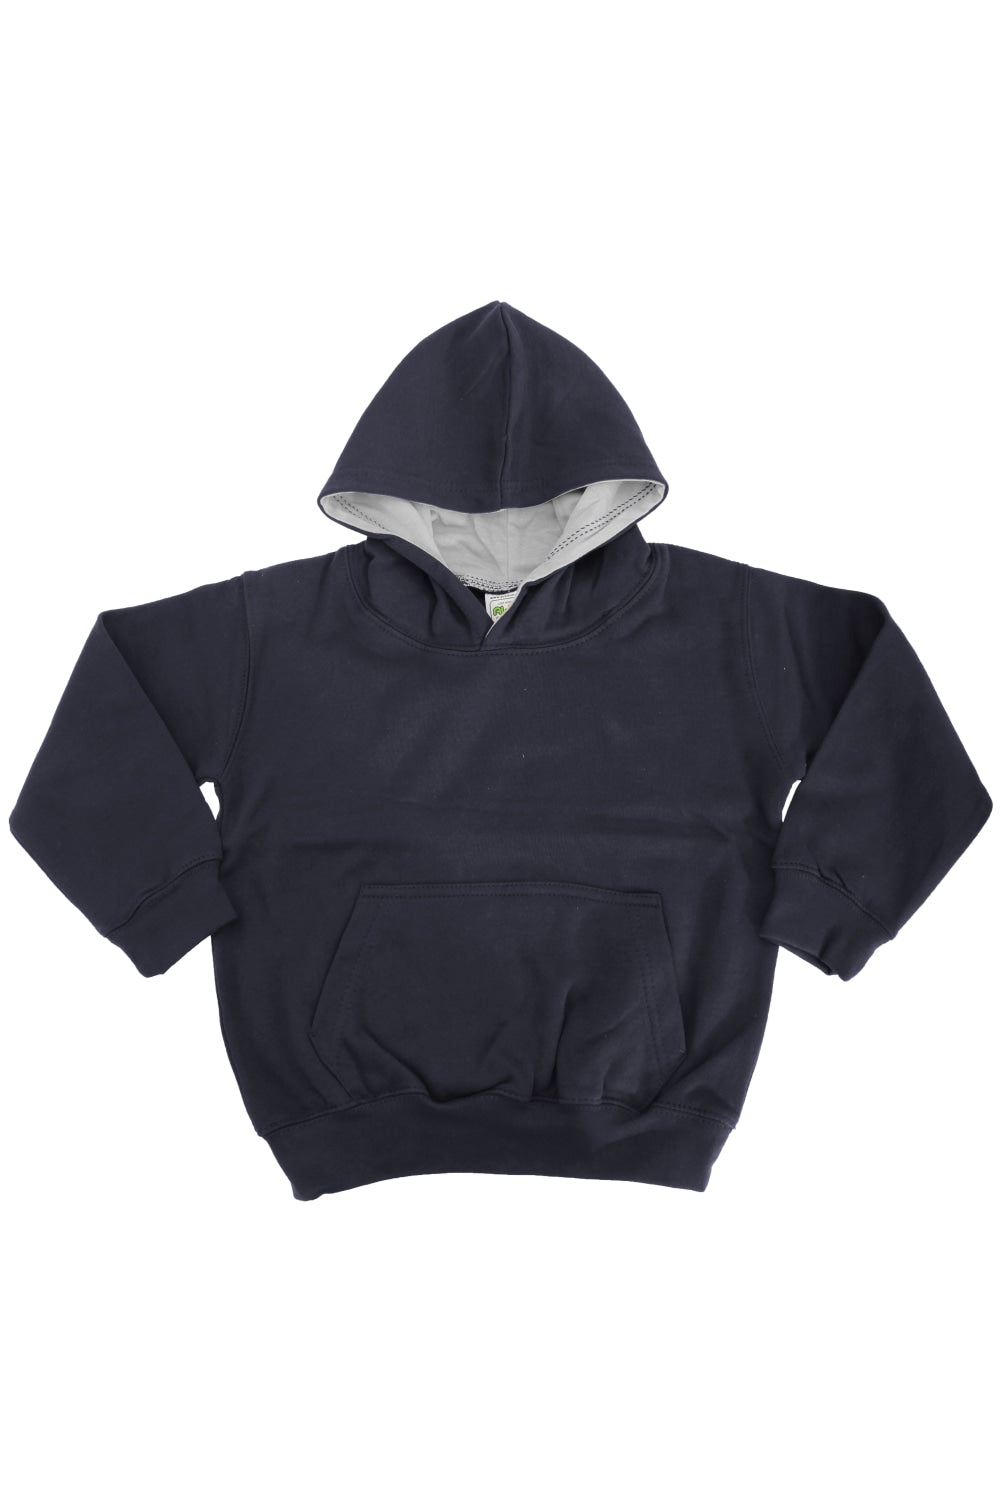 Kids Varsity Hooded Sweatshirt/Hoodie/Schoolwear - New French Navy/Heather Grey